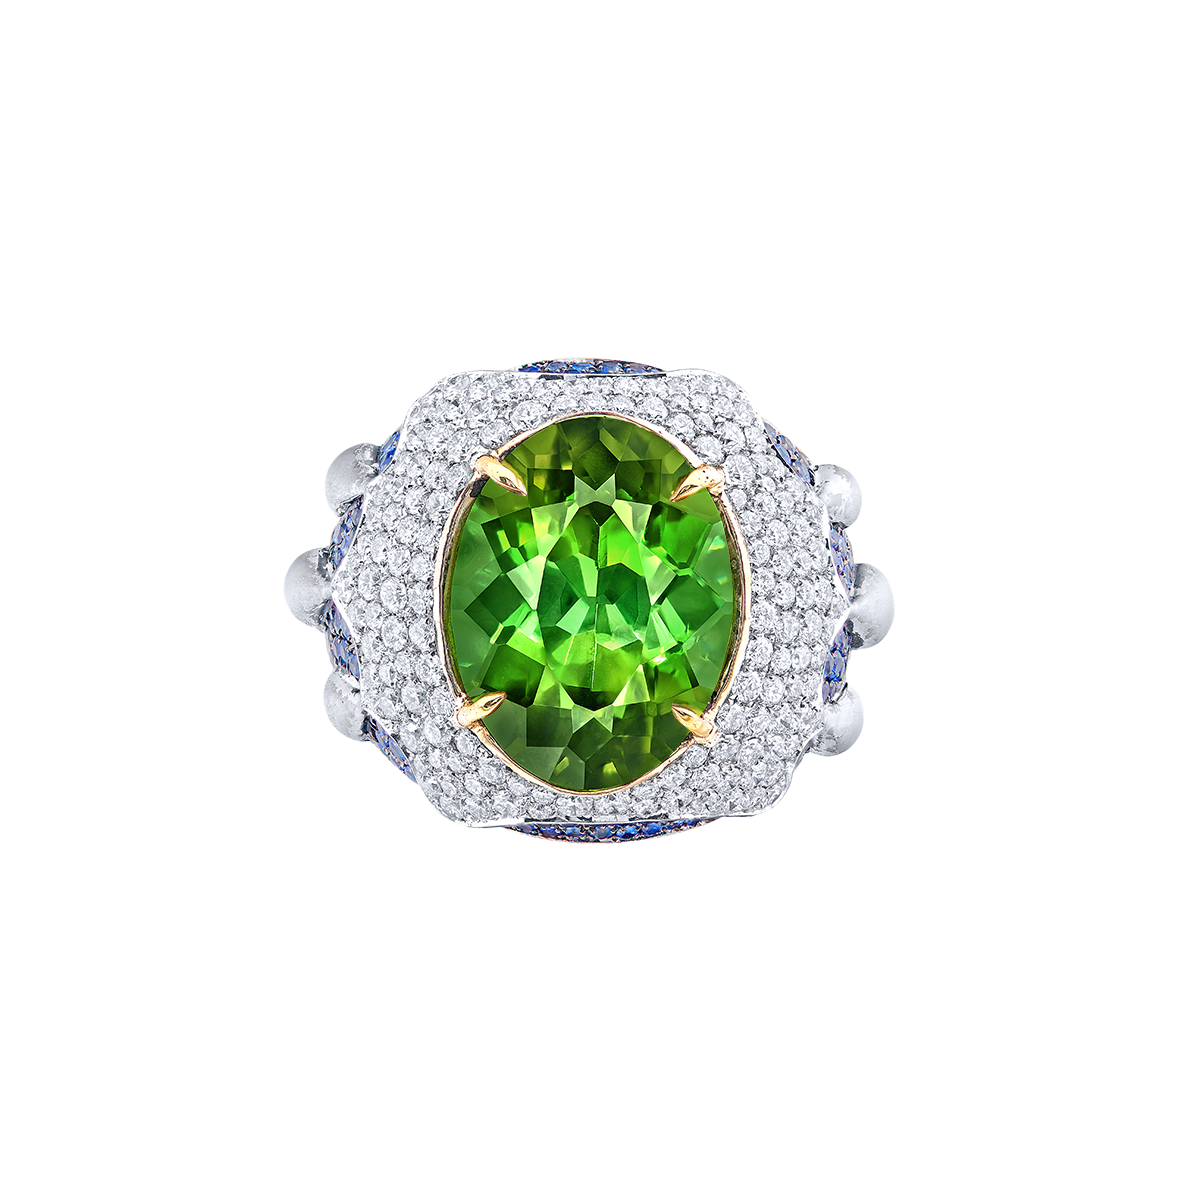 6.95克拉 綠碧璽鑽戒
Green Tourmaline And 
Diamond Ring